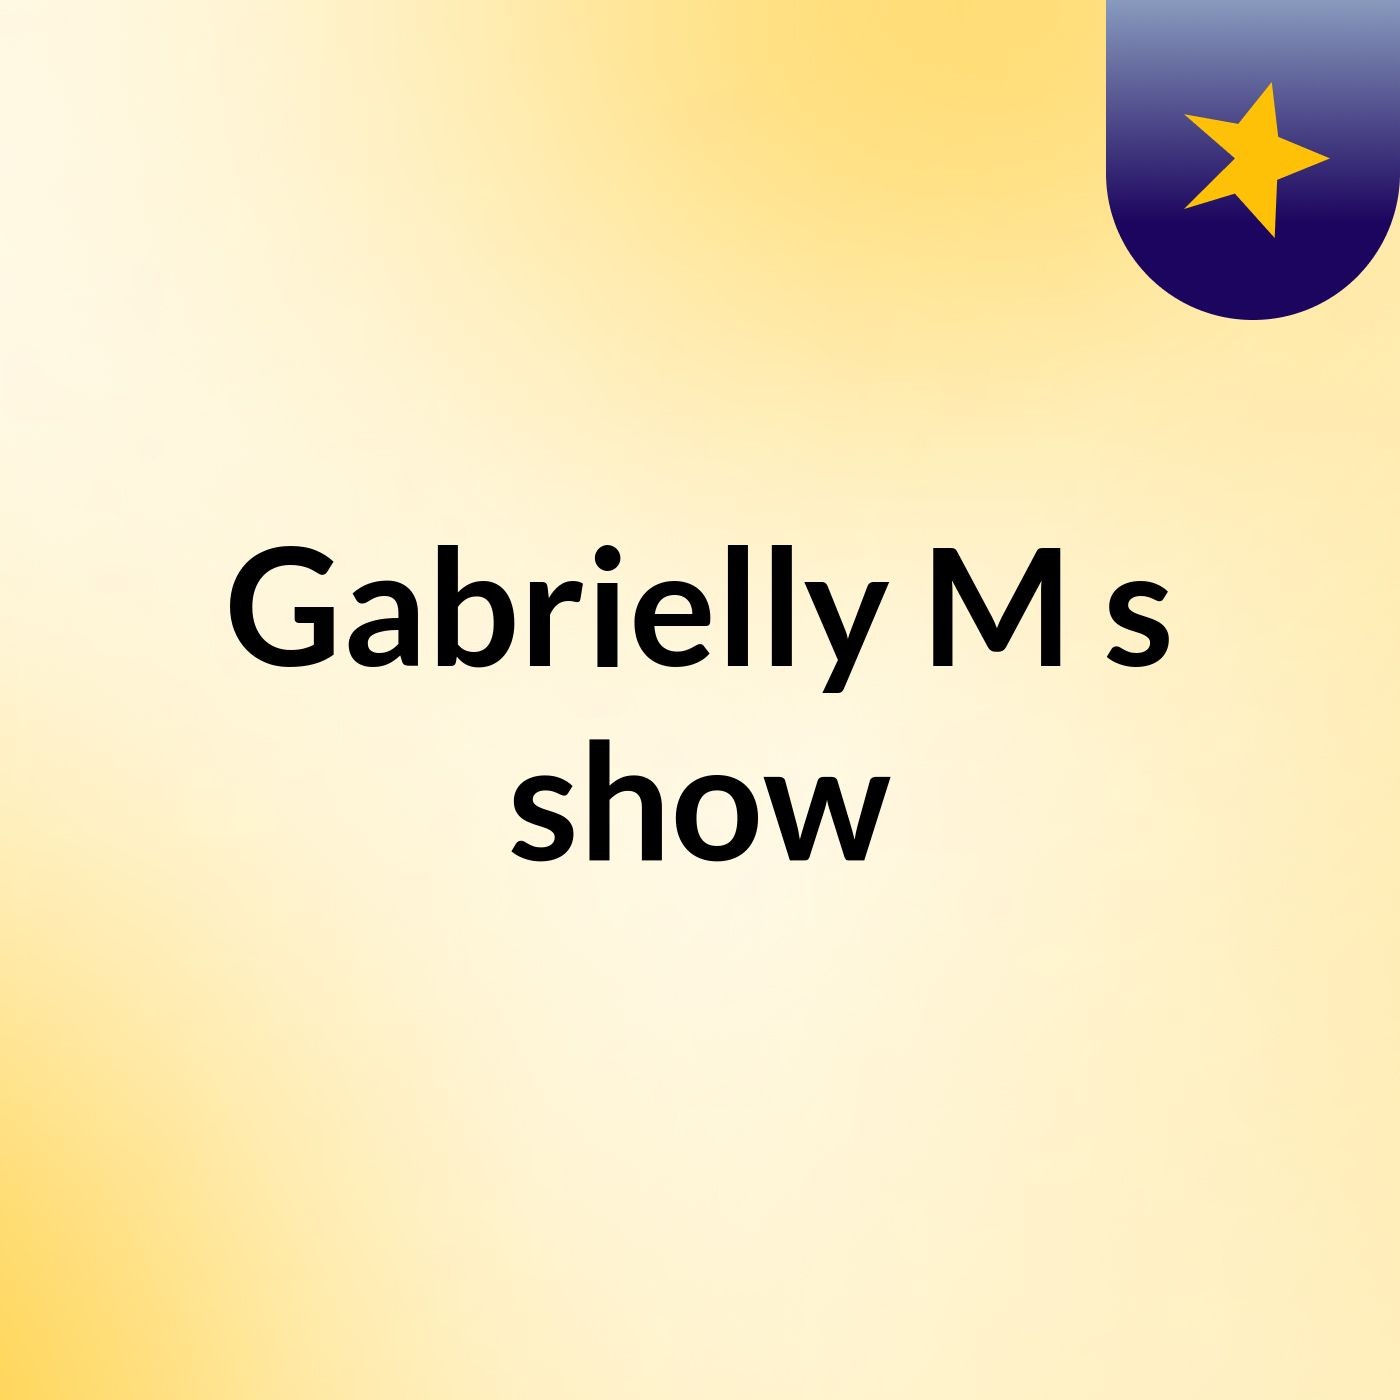 Gabrielly M's show